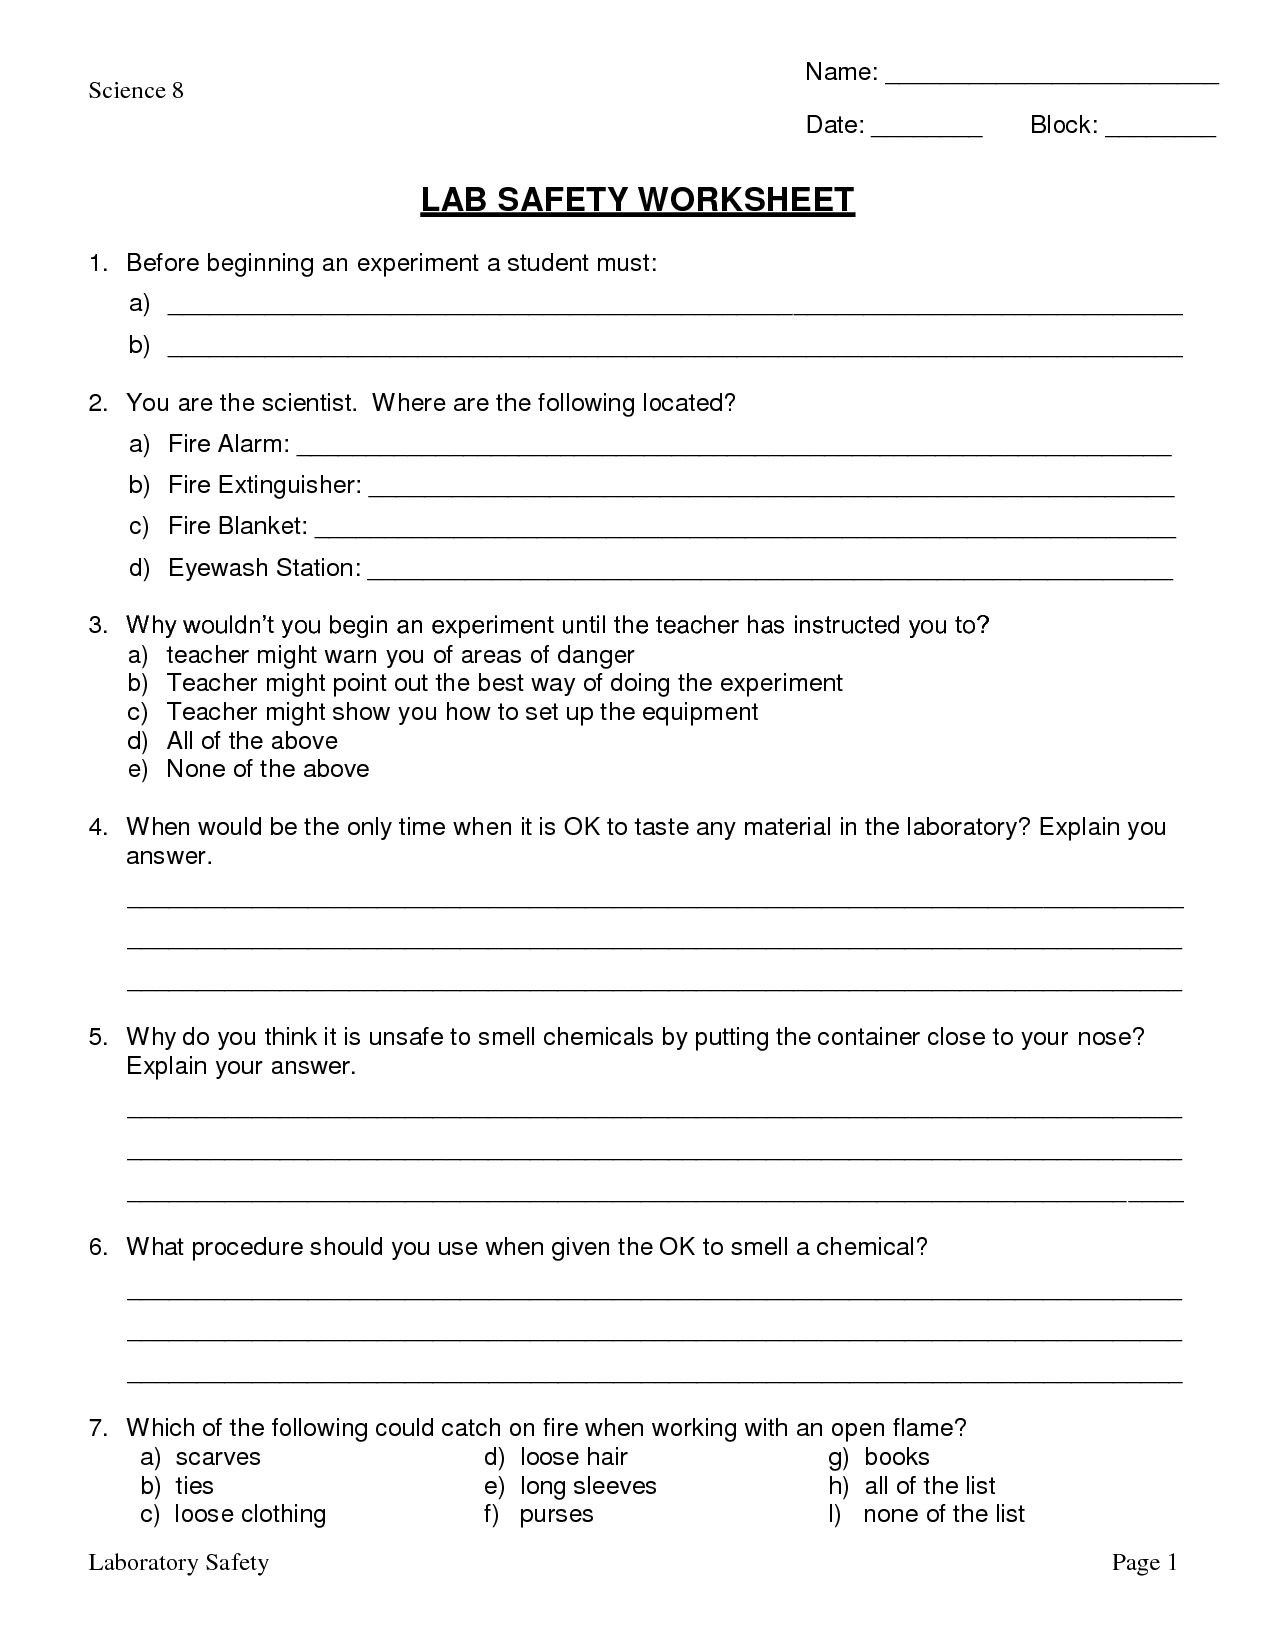 Lab Safety Worksheet Pdf Image Result for Lab Safety Worksheet